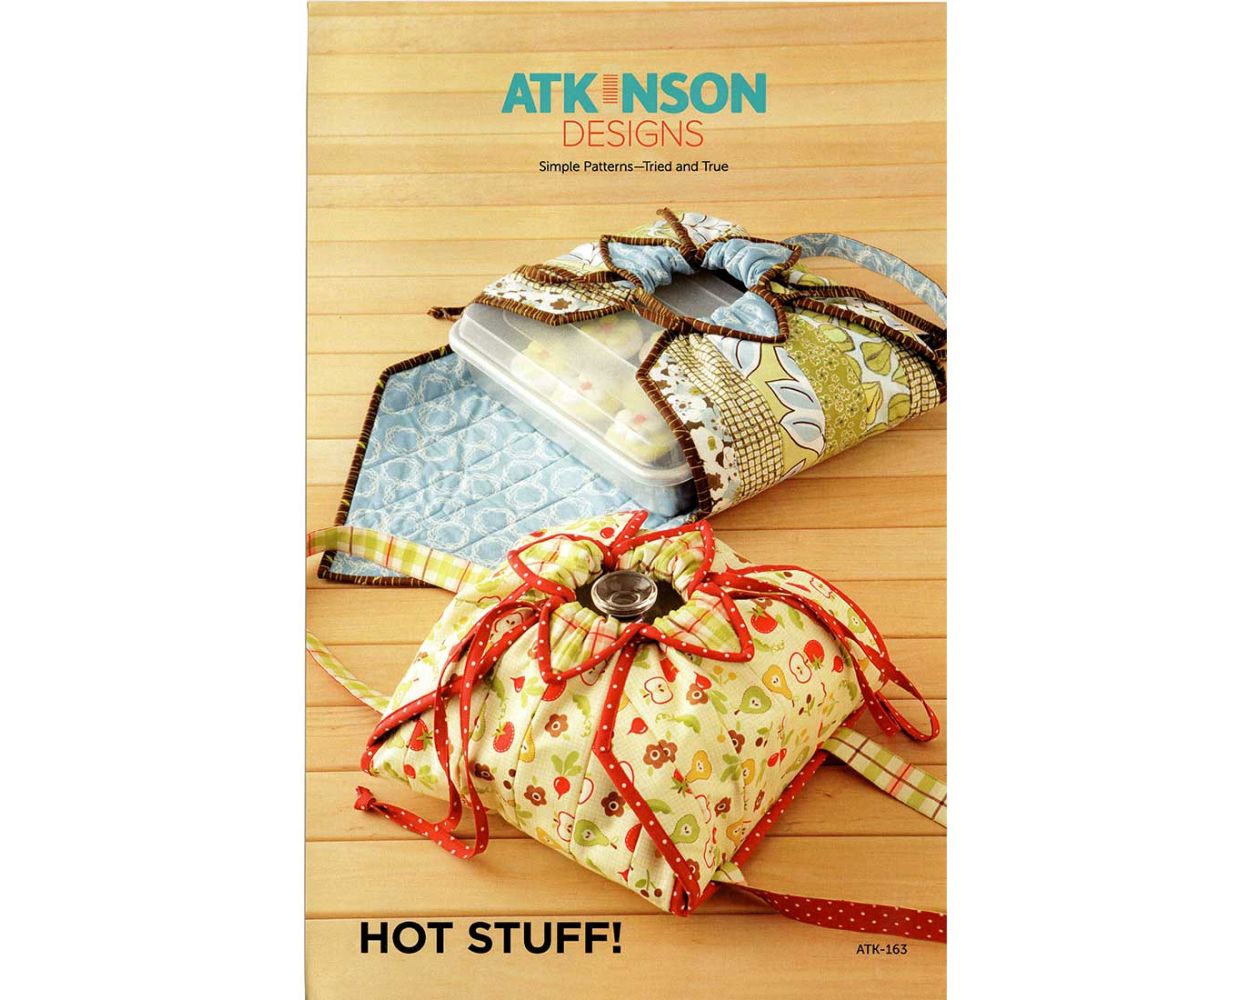 Hot Stuff! by Atkinson Desings ATK-163